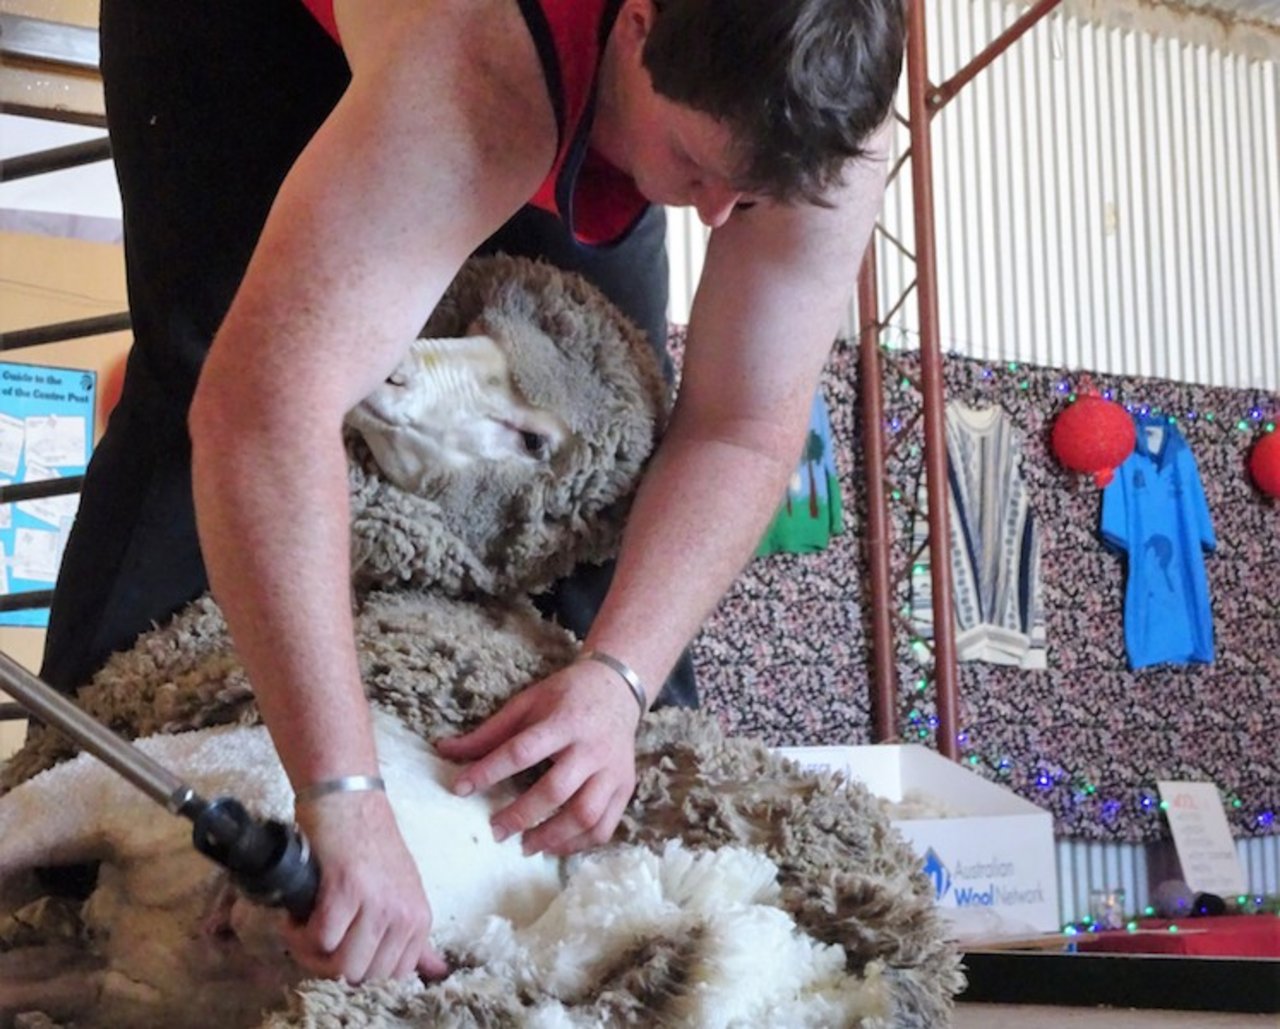 Schafschur bei Adelaide: Noch wird von Hand geschoren. (mr)